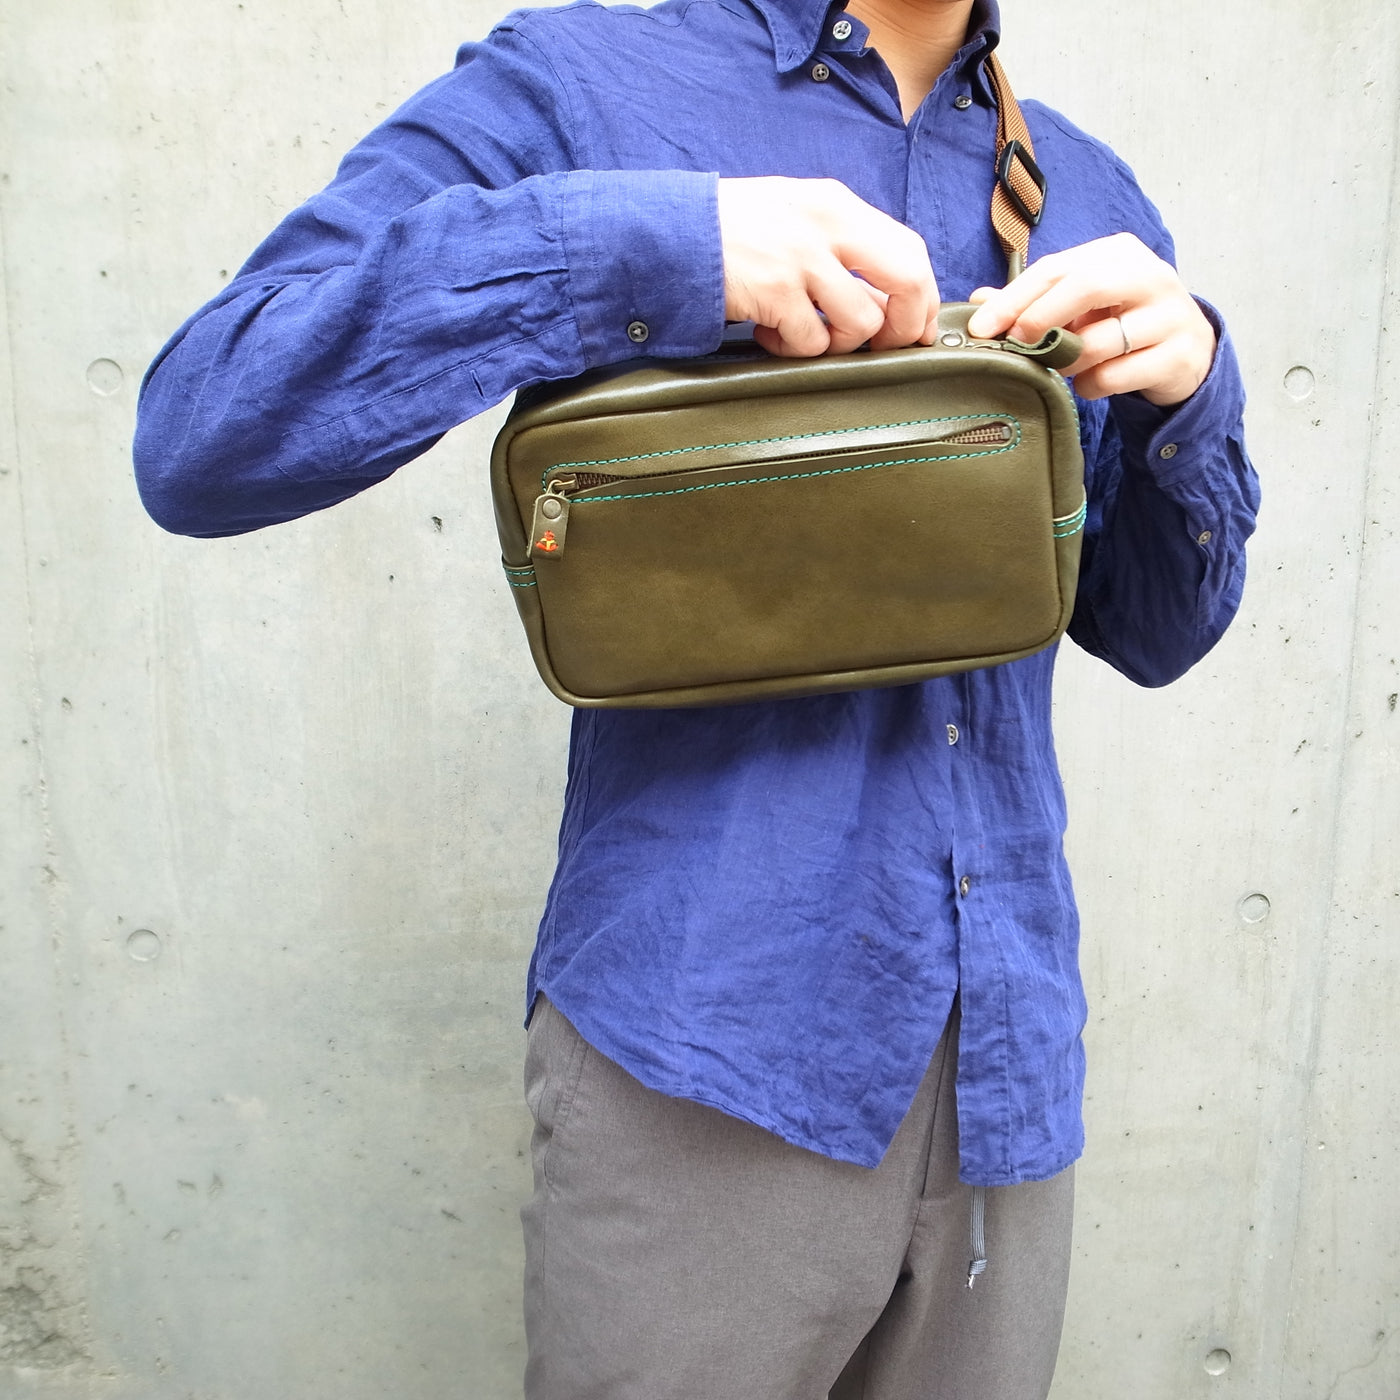 【全3サイズ】ウエストバッグの定番シルエットを日本の牛革で製作 jb-60【ネームタグ無料】